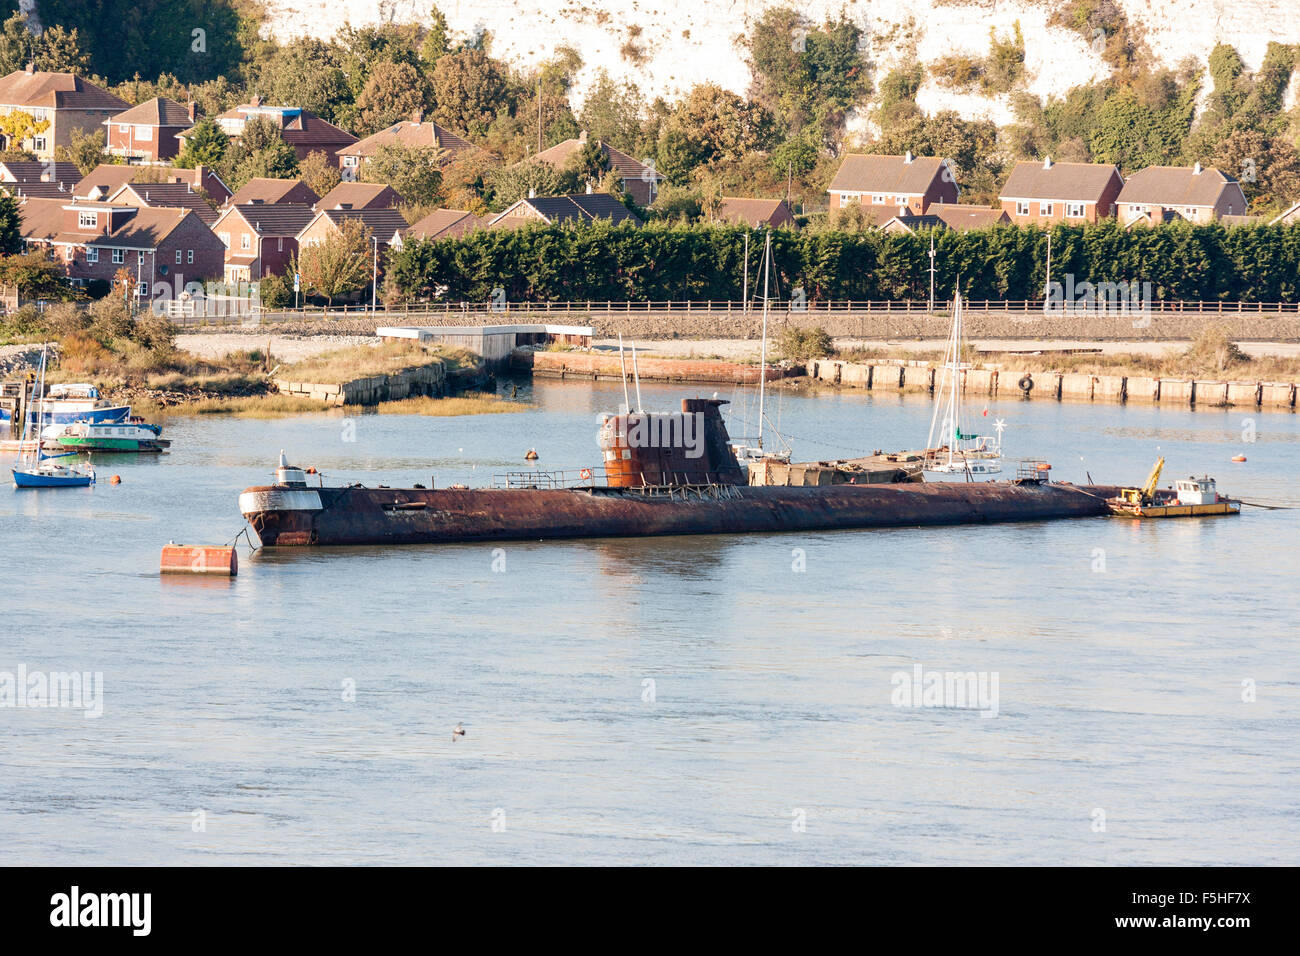 Rochester. Rostenden russischen U-Boot, U-475 Schwarze Witwe, eine sowjetische Projekt 641 Klasse, oder die NATO Name, Foxtrott, in den Fluss Medway vertäut. Stockfoto